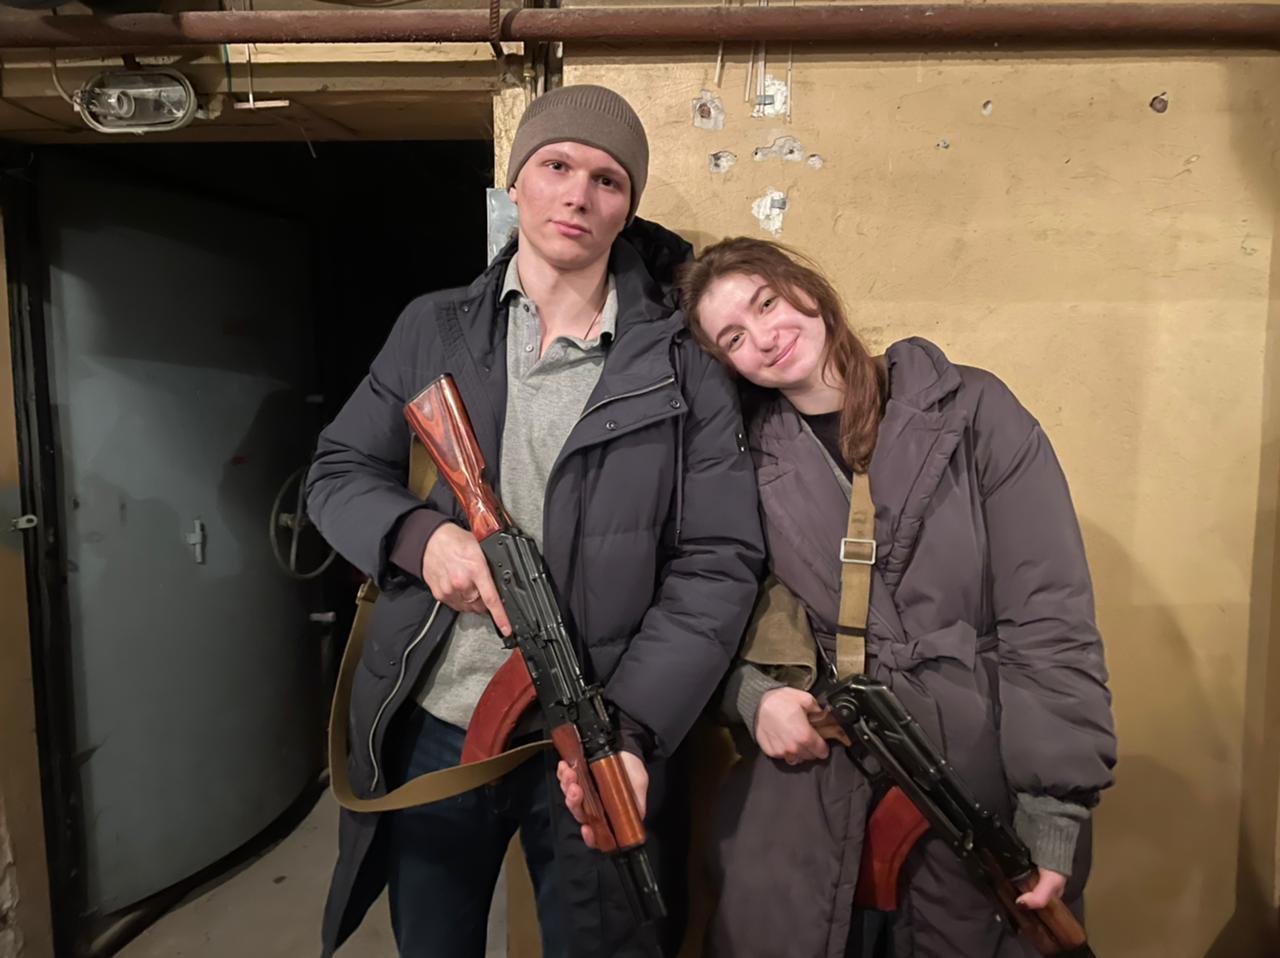 En su primer día de casados consiguieron rifles para defender a Ucrania